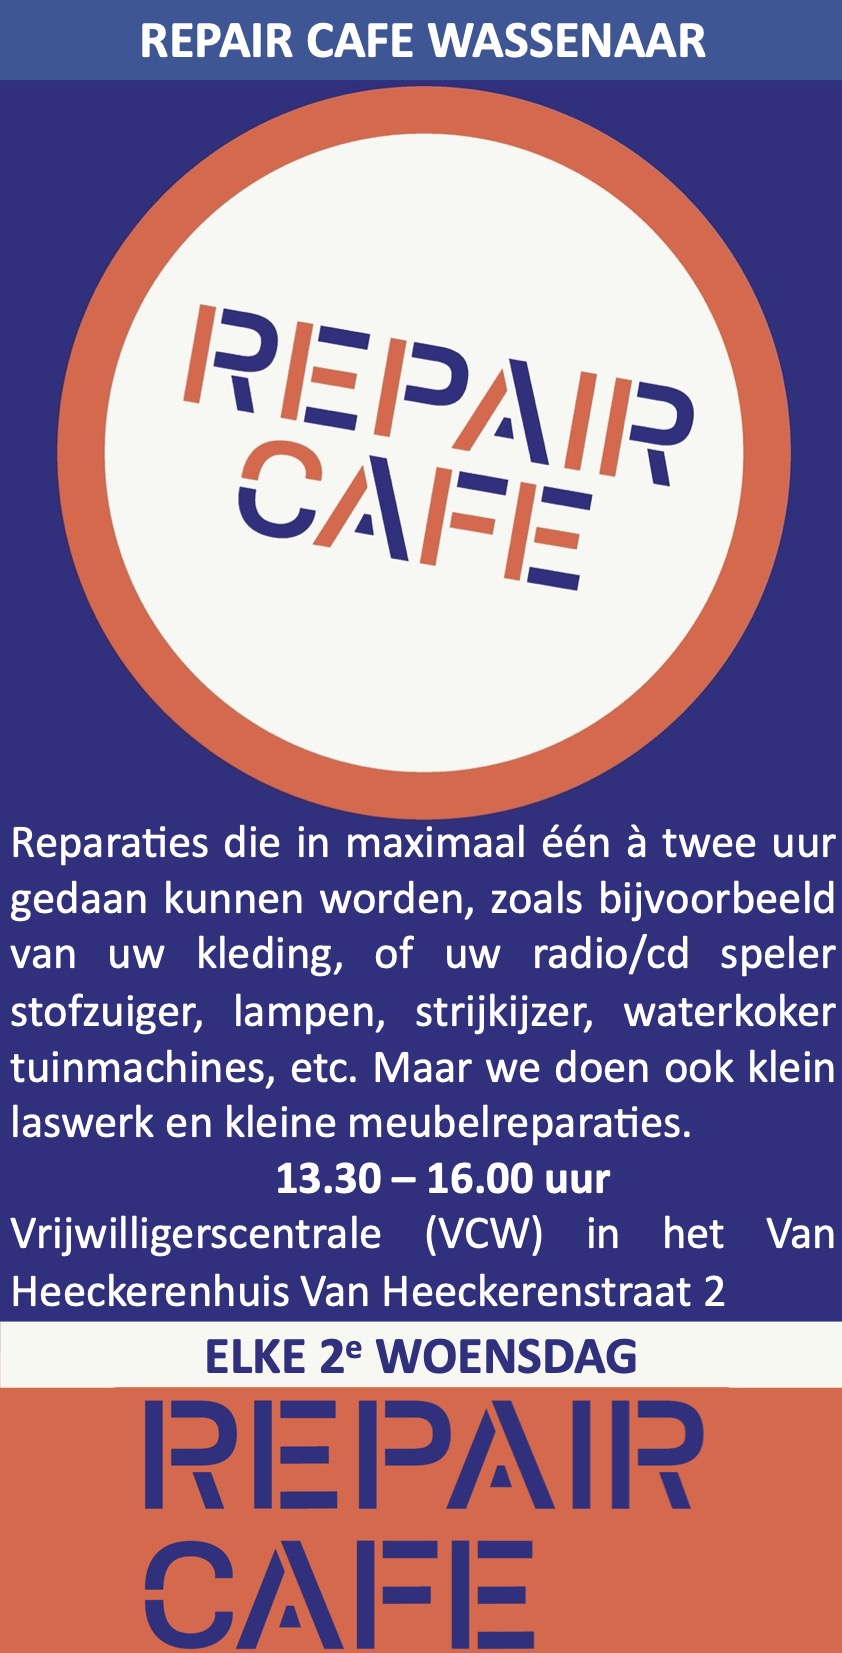 Repair Café Wassenaar Van Heeckerenhuis